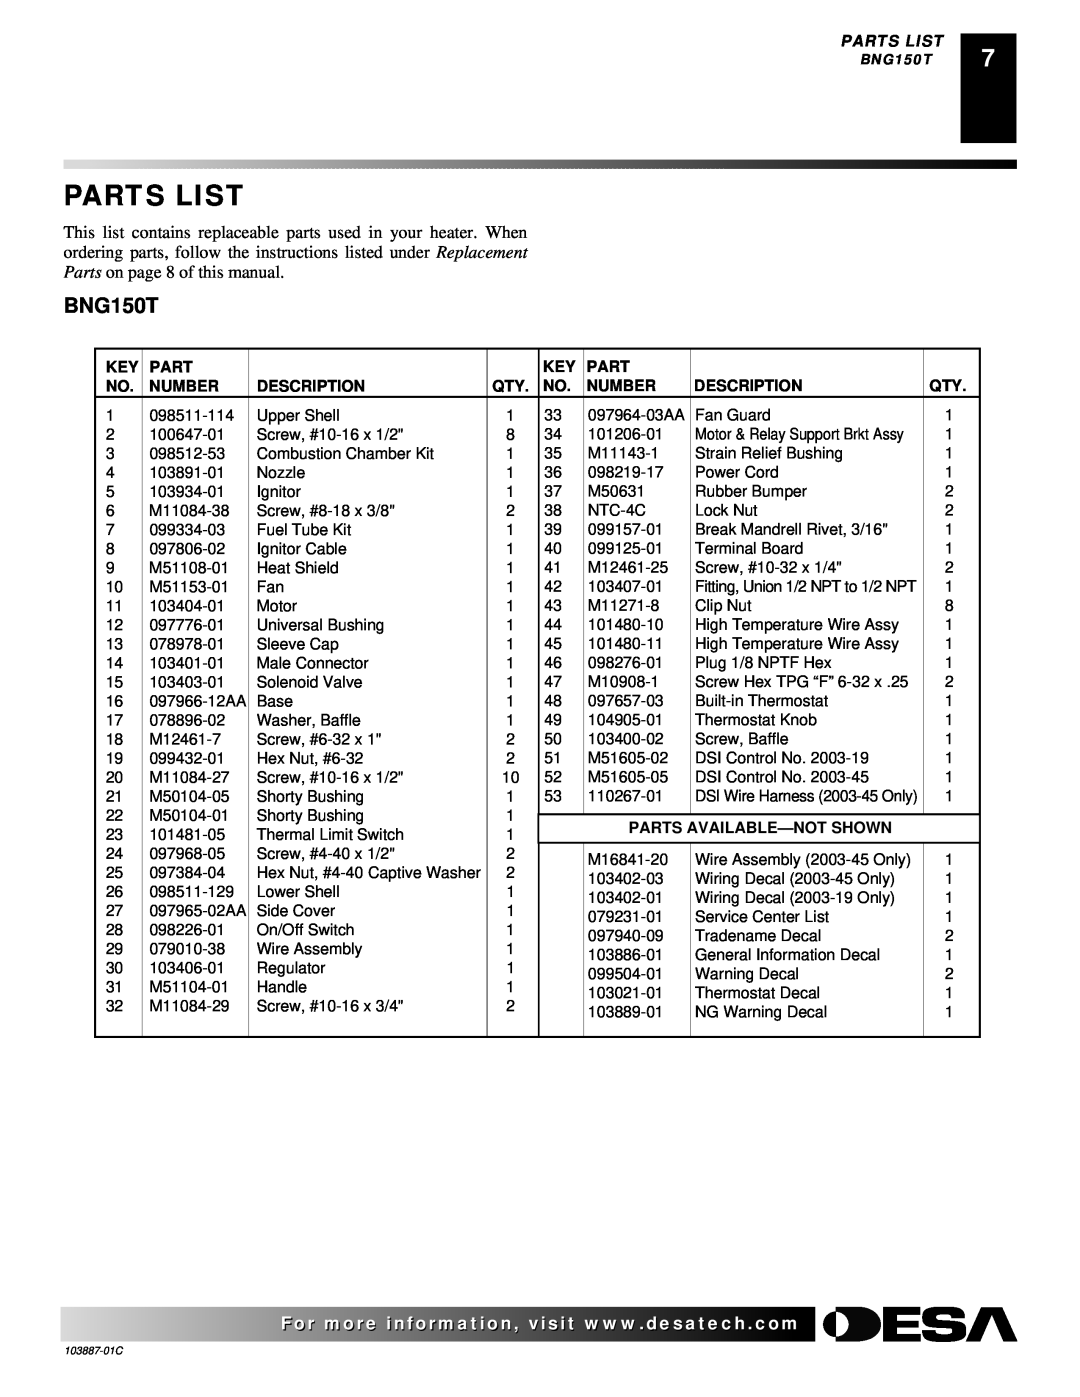 Desa BNG150T owner manual Parts List, Number, Description, Parts Available-Notshown 